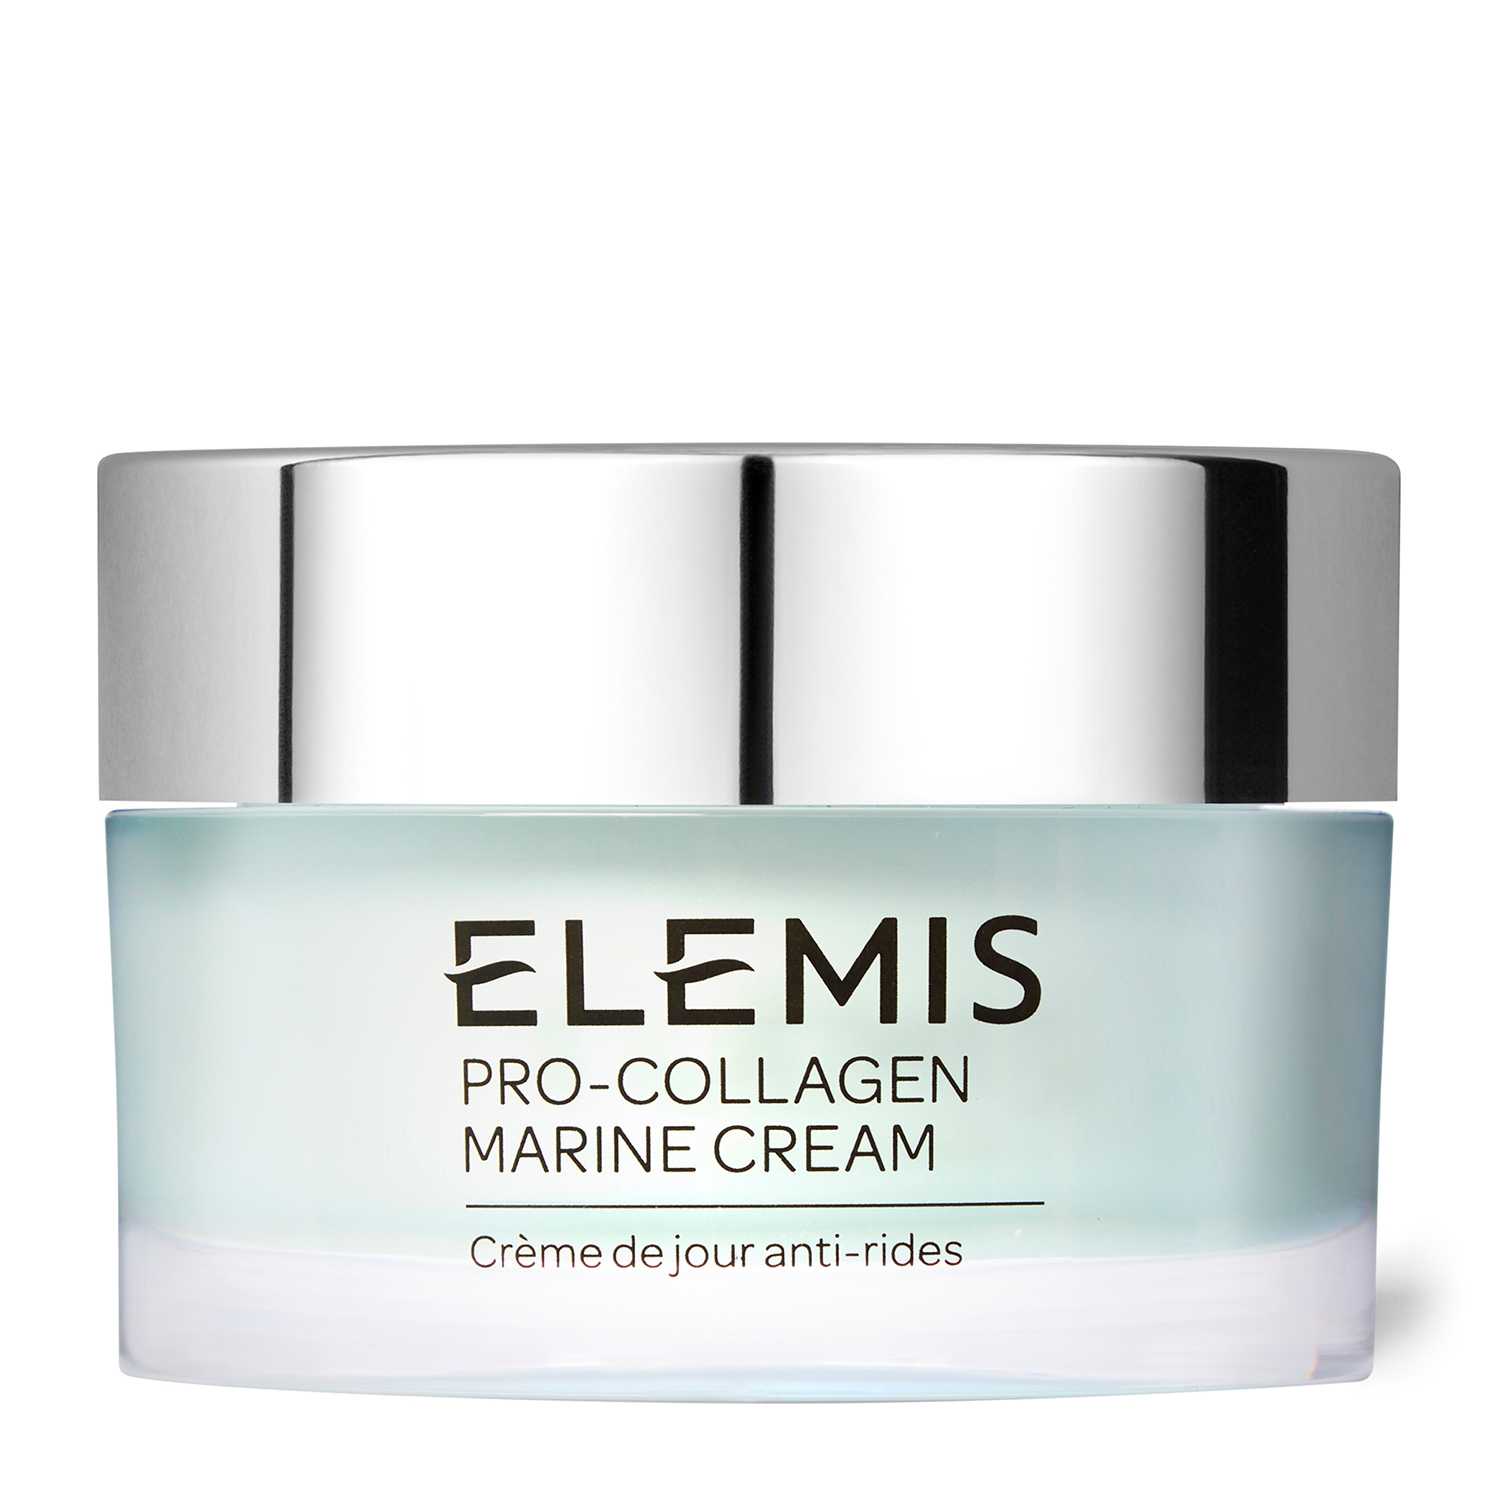 ELEMIS Pro-Collagen Marine Cream For All Skin Types, 30ml